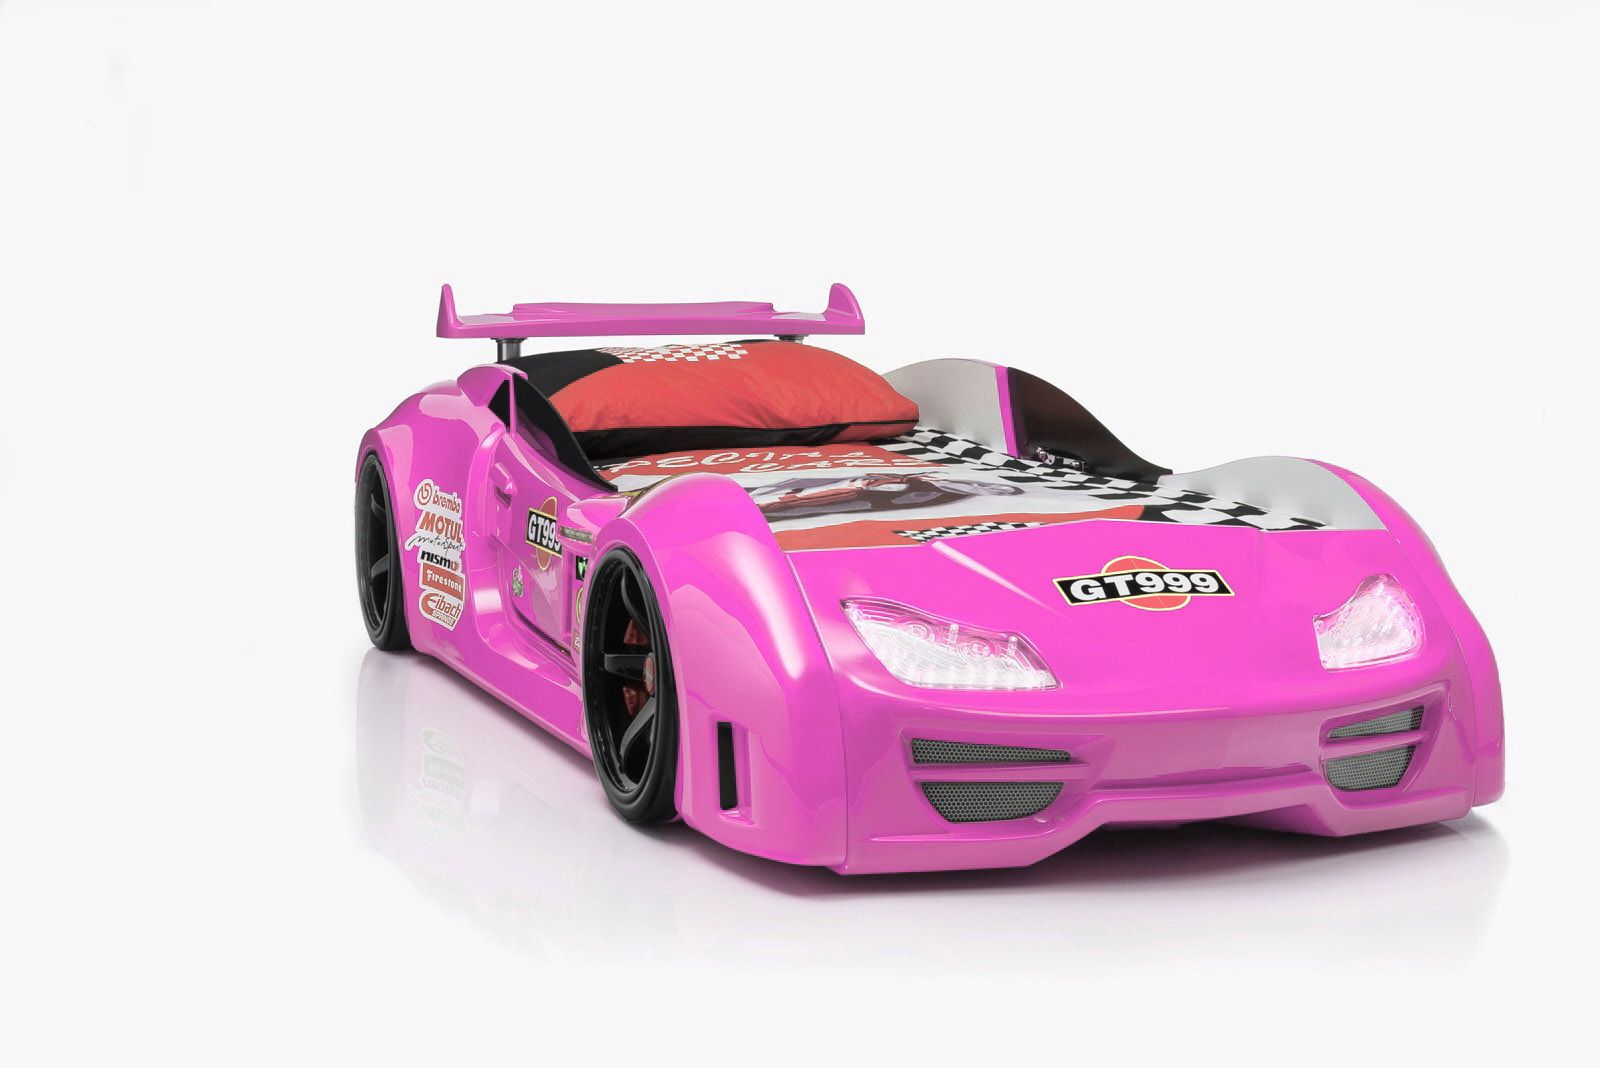 Autobett GTM-999 in Pink